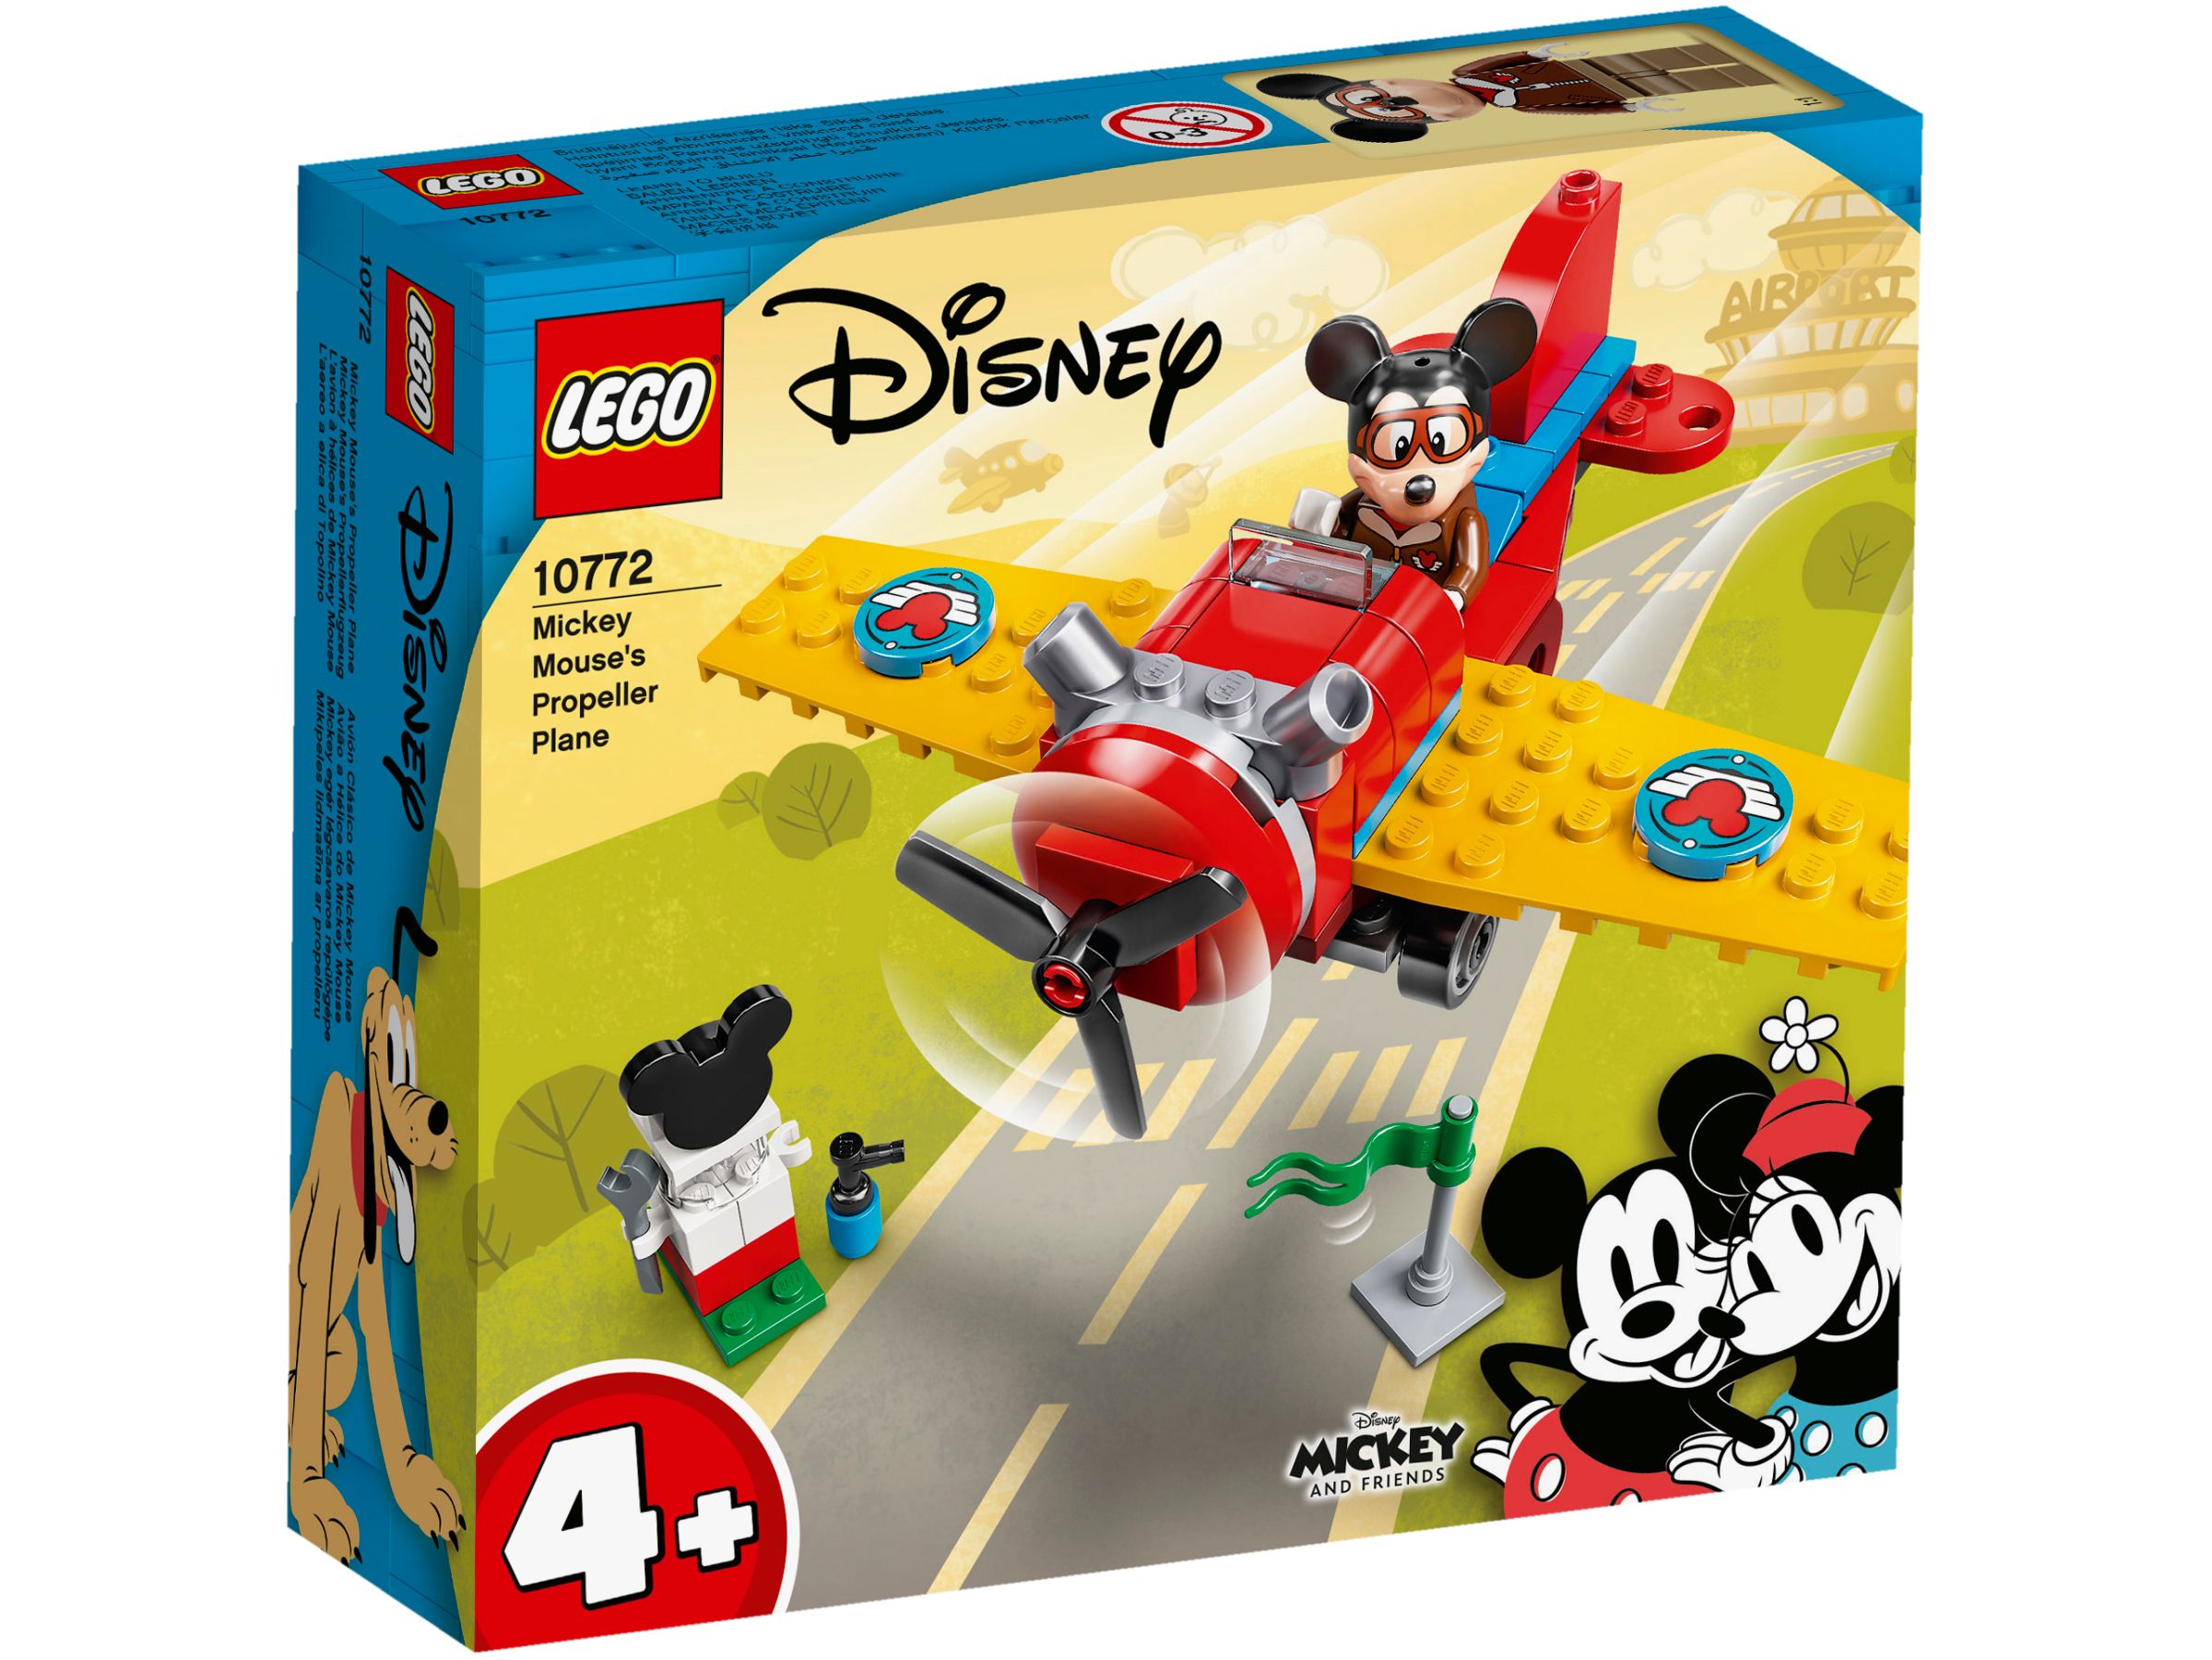 LEGO Disney 10772 Mickys Propellerflugzeug LEGO_10772_box1_v29.jpg